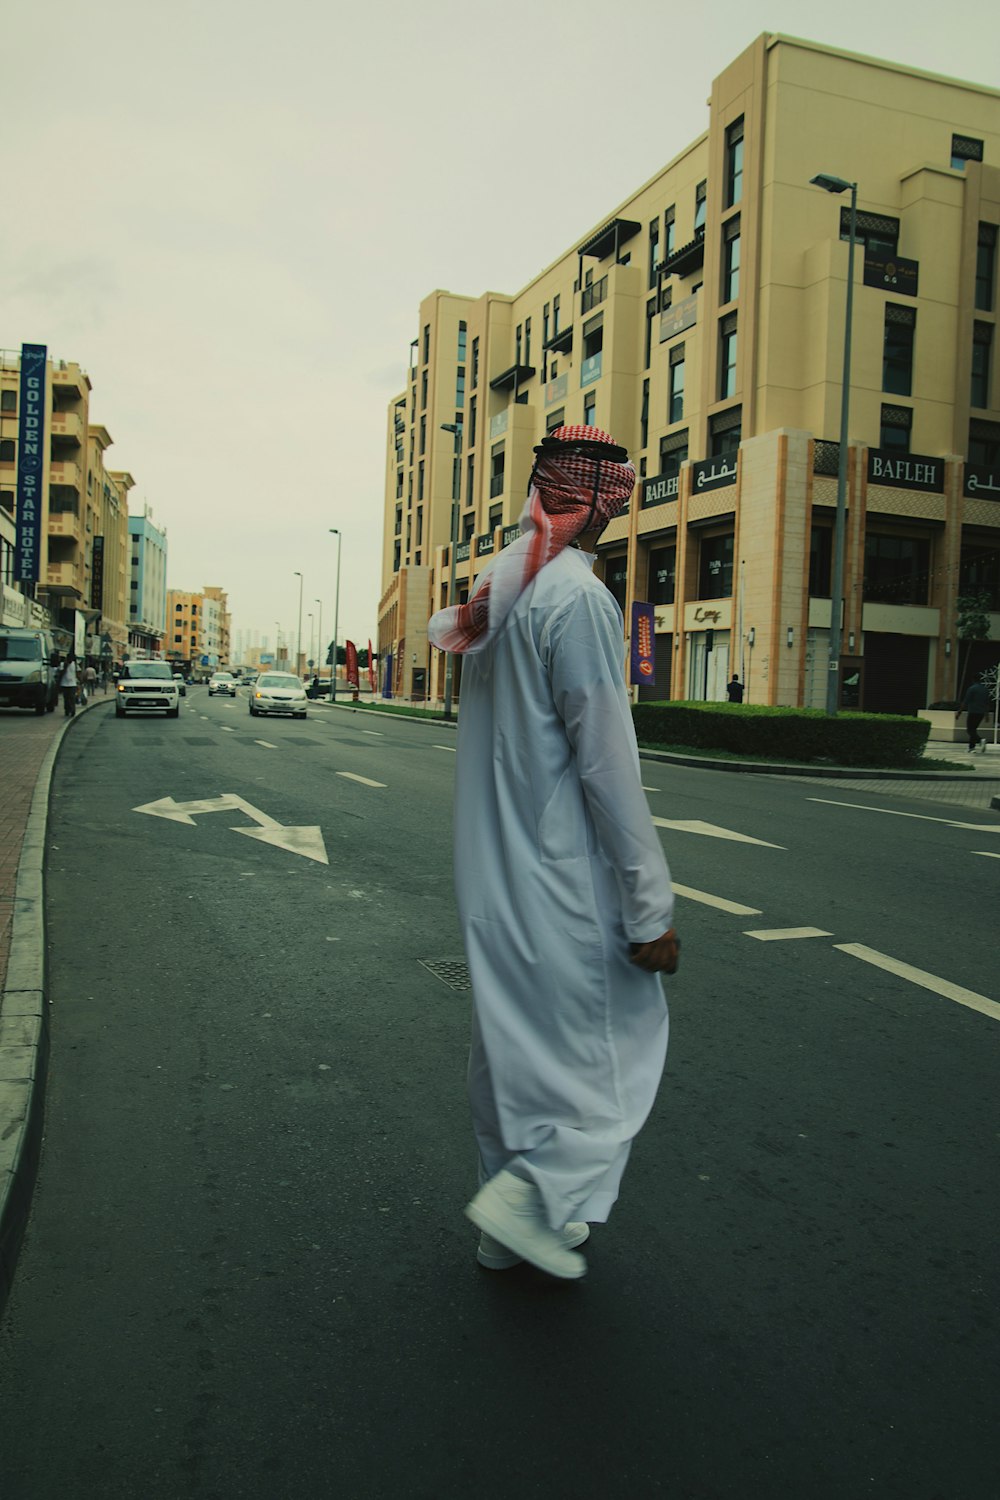 Un homme marchant dans une rue en tenue blanche